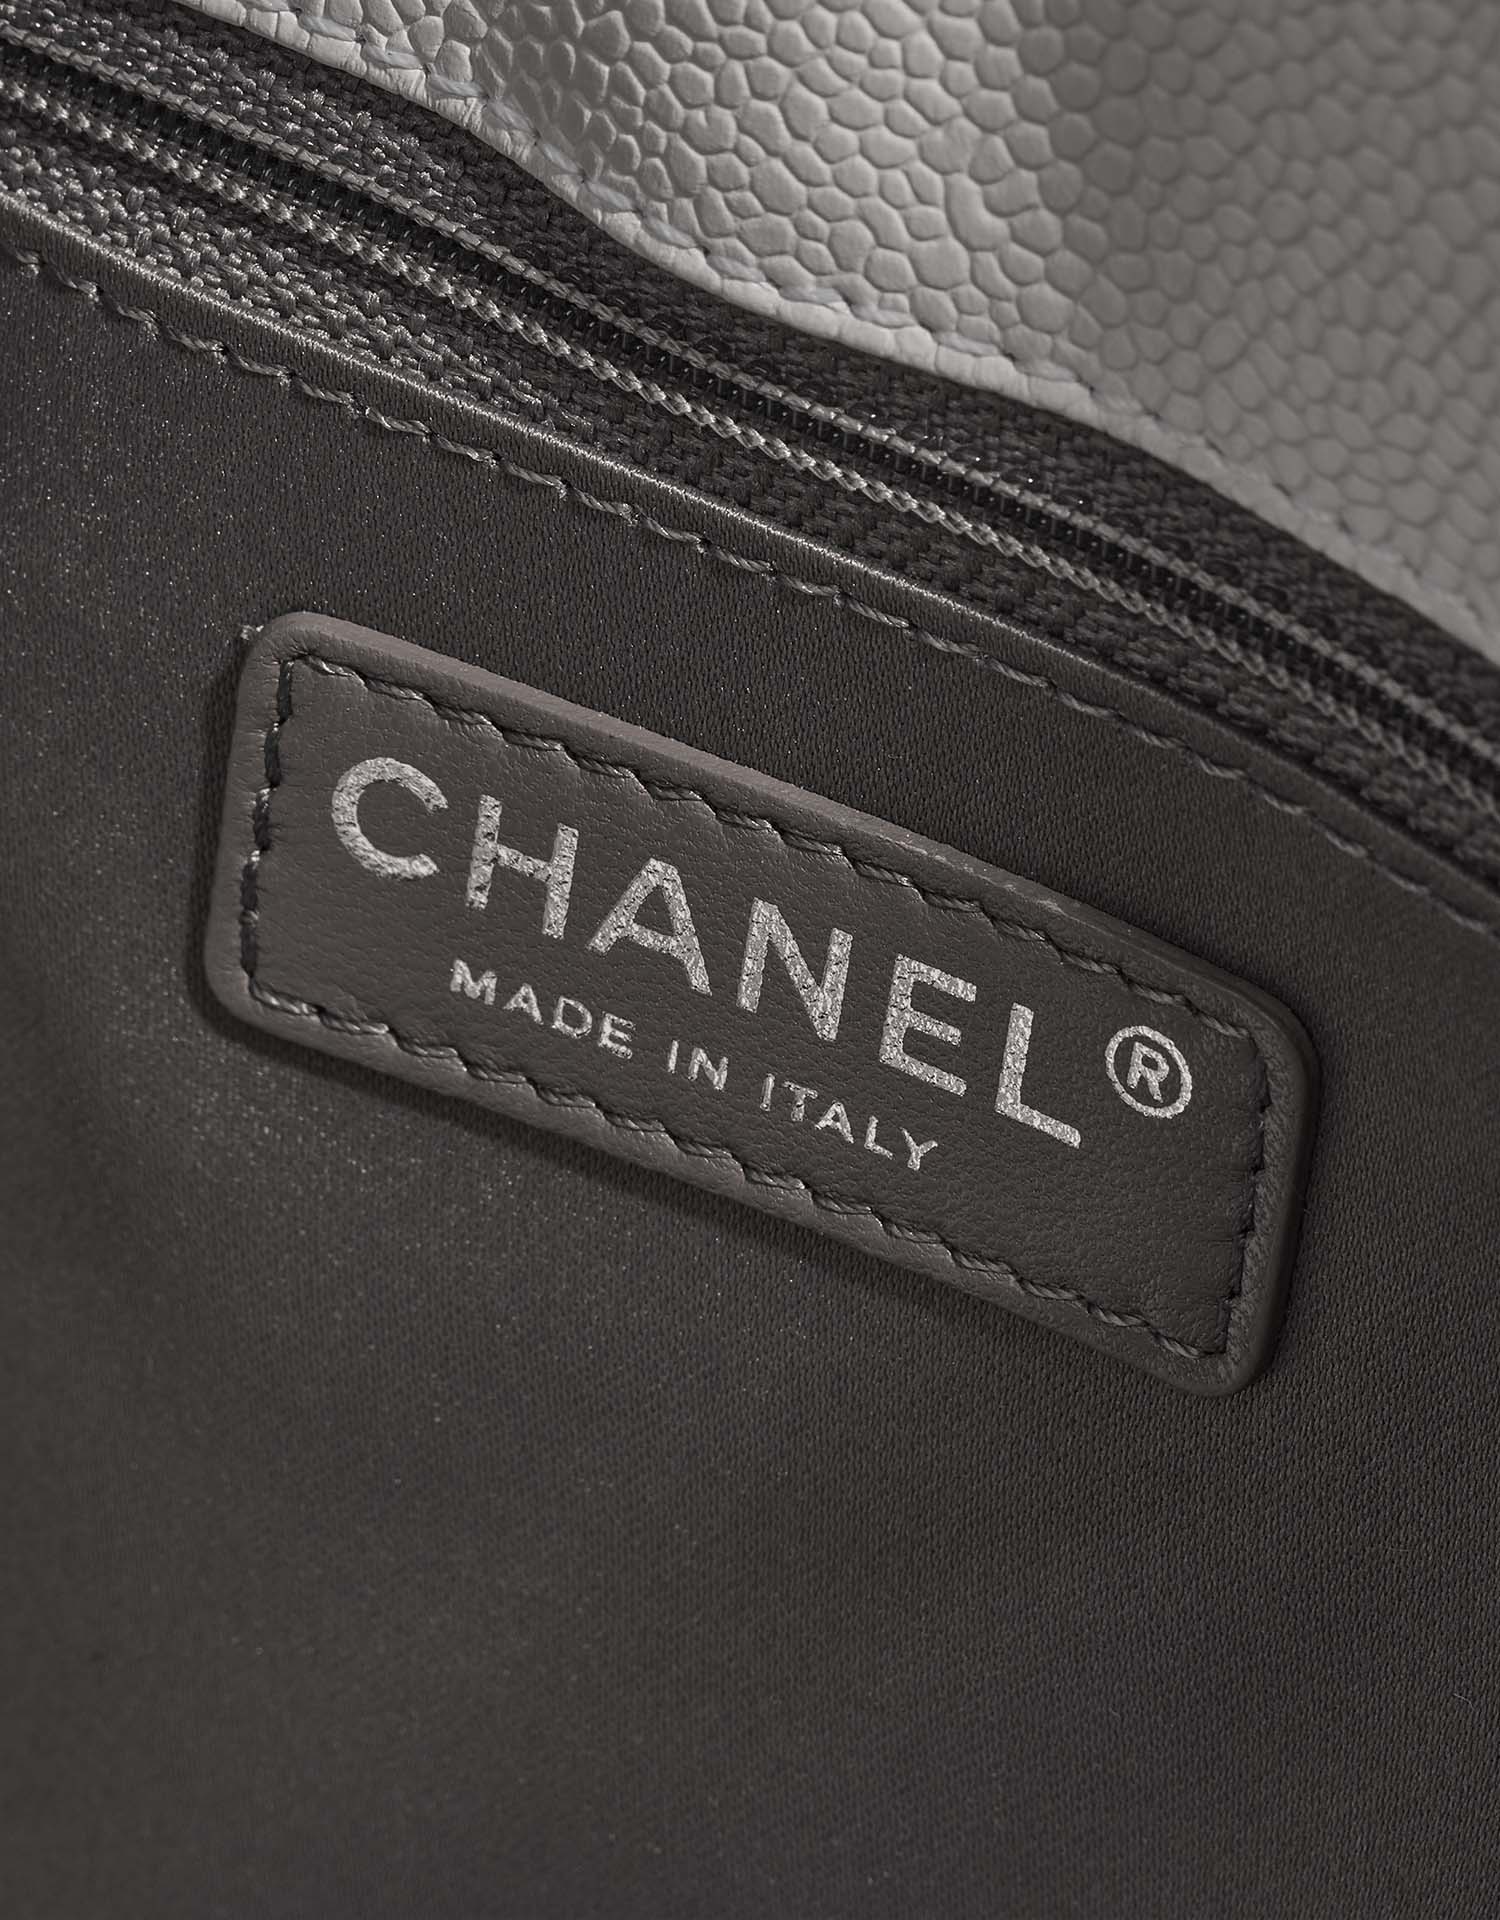 Gebrauchte Chanel Tasche Shopping Tote GST Caviar-Leder Weiß Weiß | Verkaufen Sie Ihre Designer-Tasche auf Saclab.com